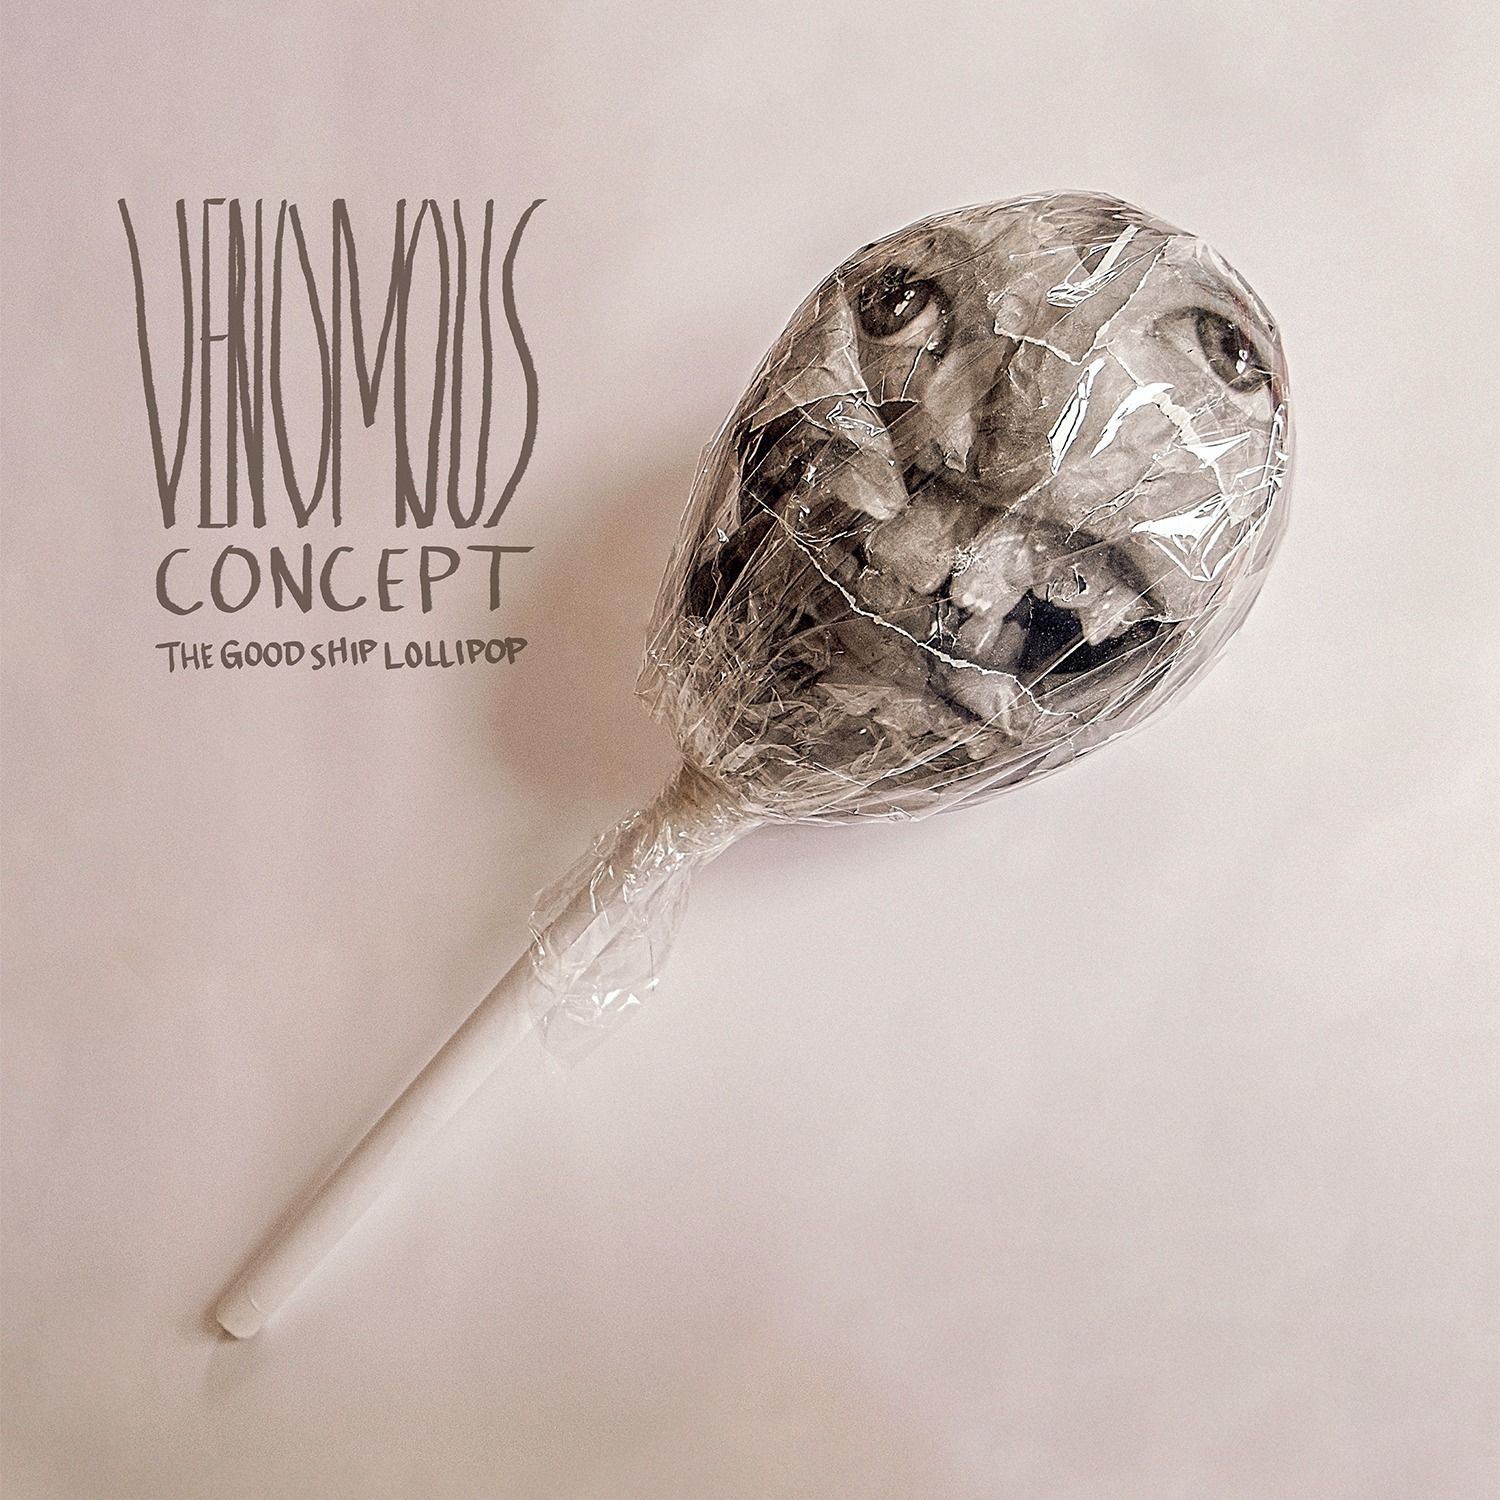 'Voices'-Single vom "The Good Ship Lollipop"-Album veröffentlicht